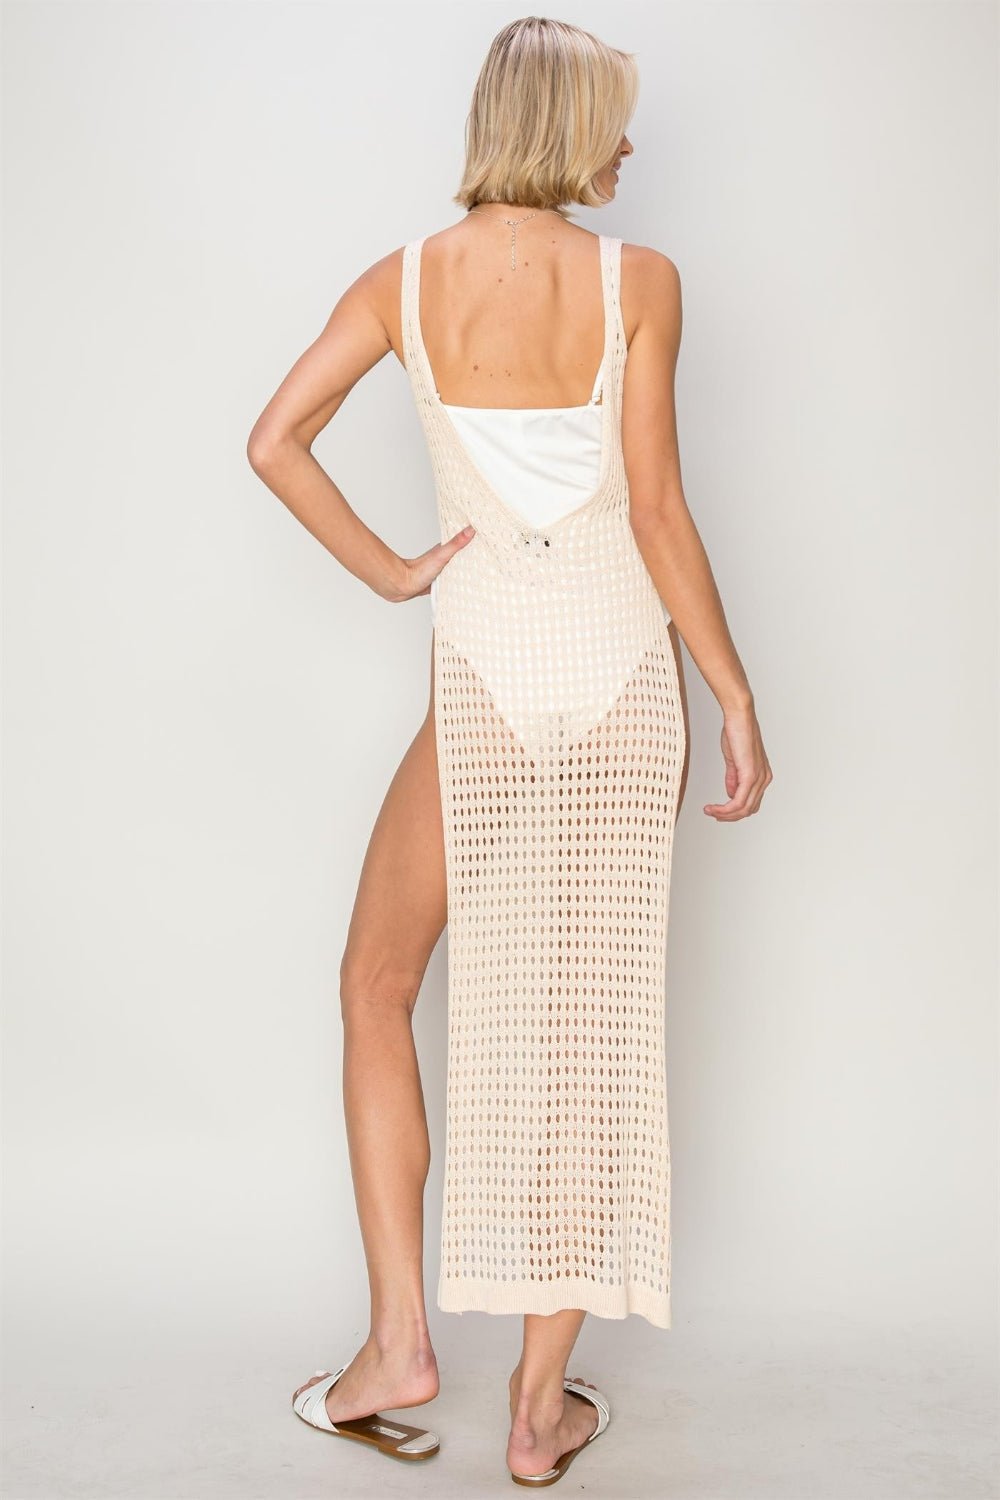 Backless Crochet Cover Up Maxi Dress in BeigeMaxi DressHYFVE